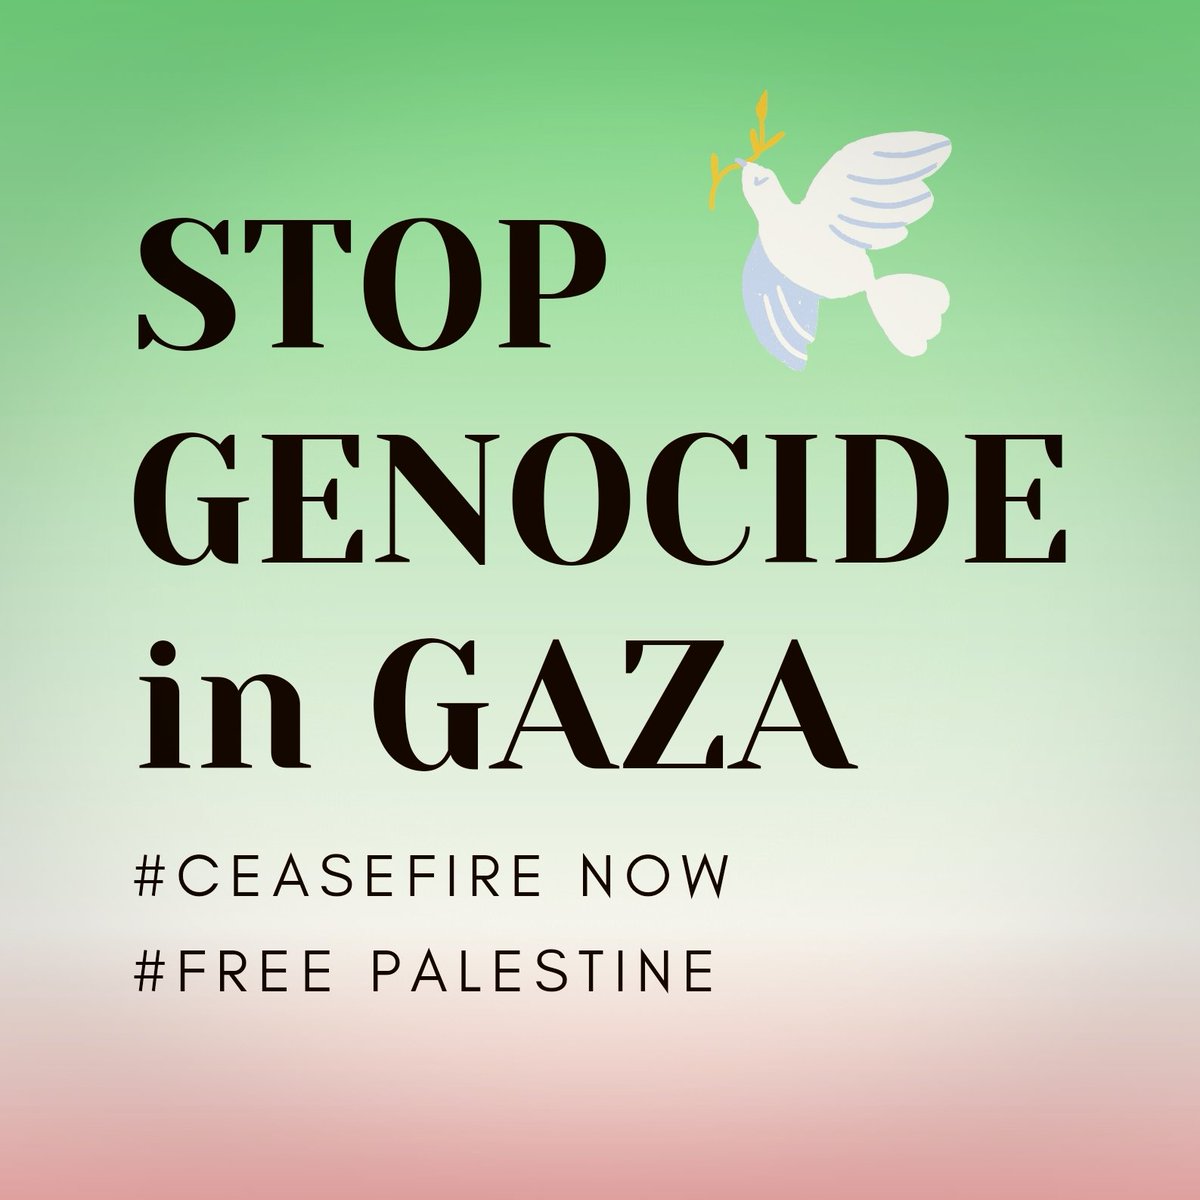 目をそらさない。
#HandsOffRafah
#ラファに手を出すな
#StopGenocideInGaza
#CeasefireNOW
#FreePalestine